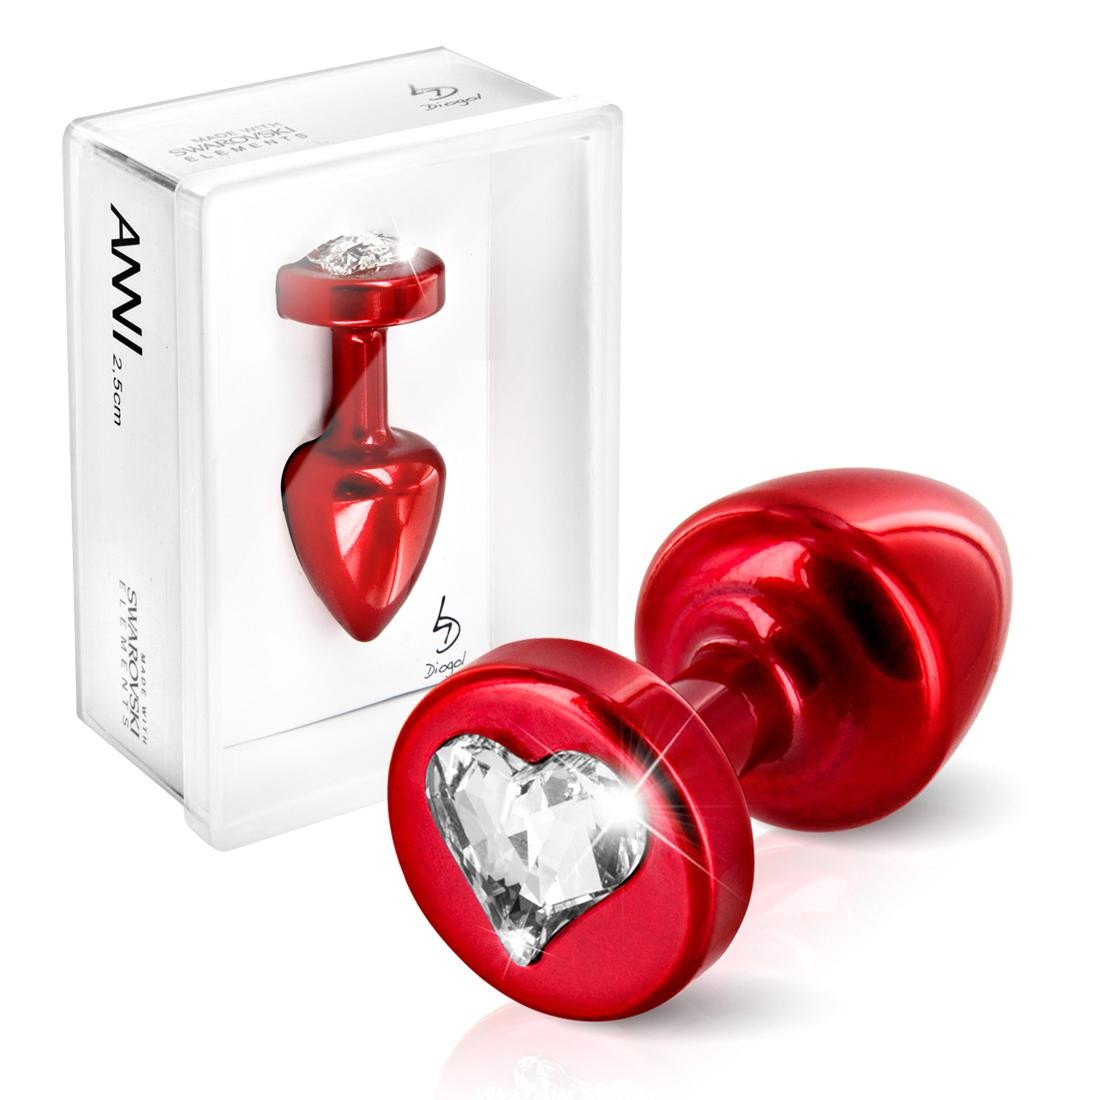  ANNI  by  Diogol  -  ANNI  R  Heart  red  T1  crystal  -  Analplug 